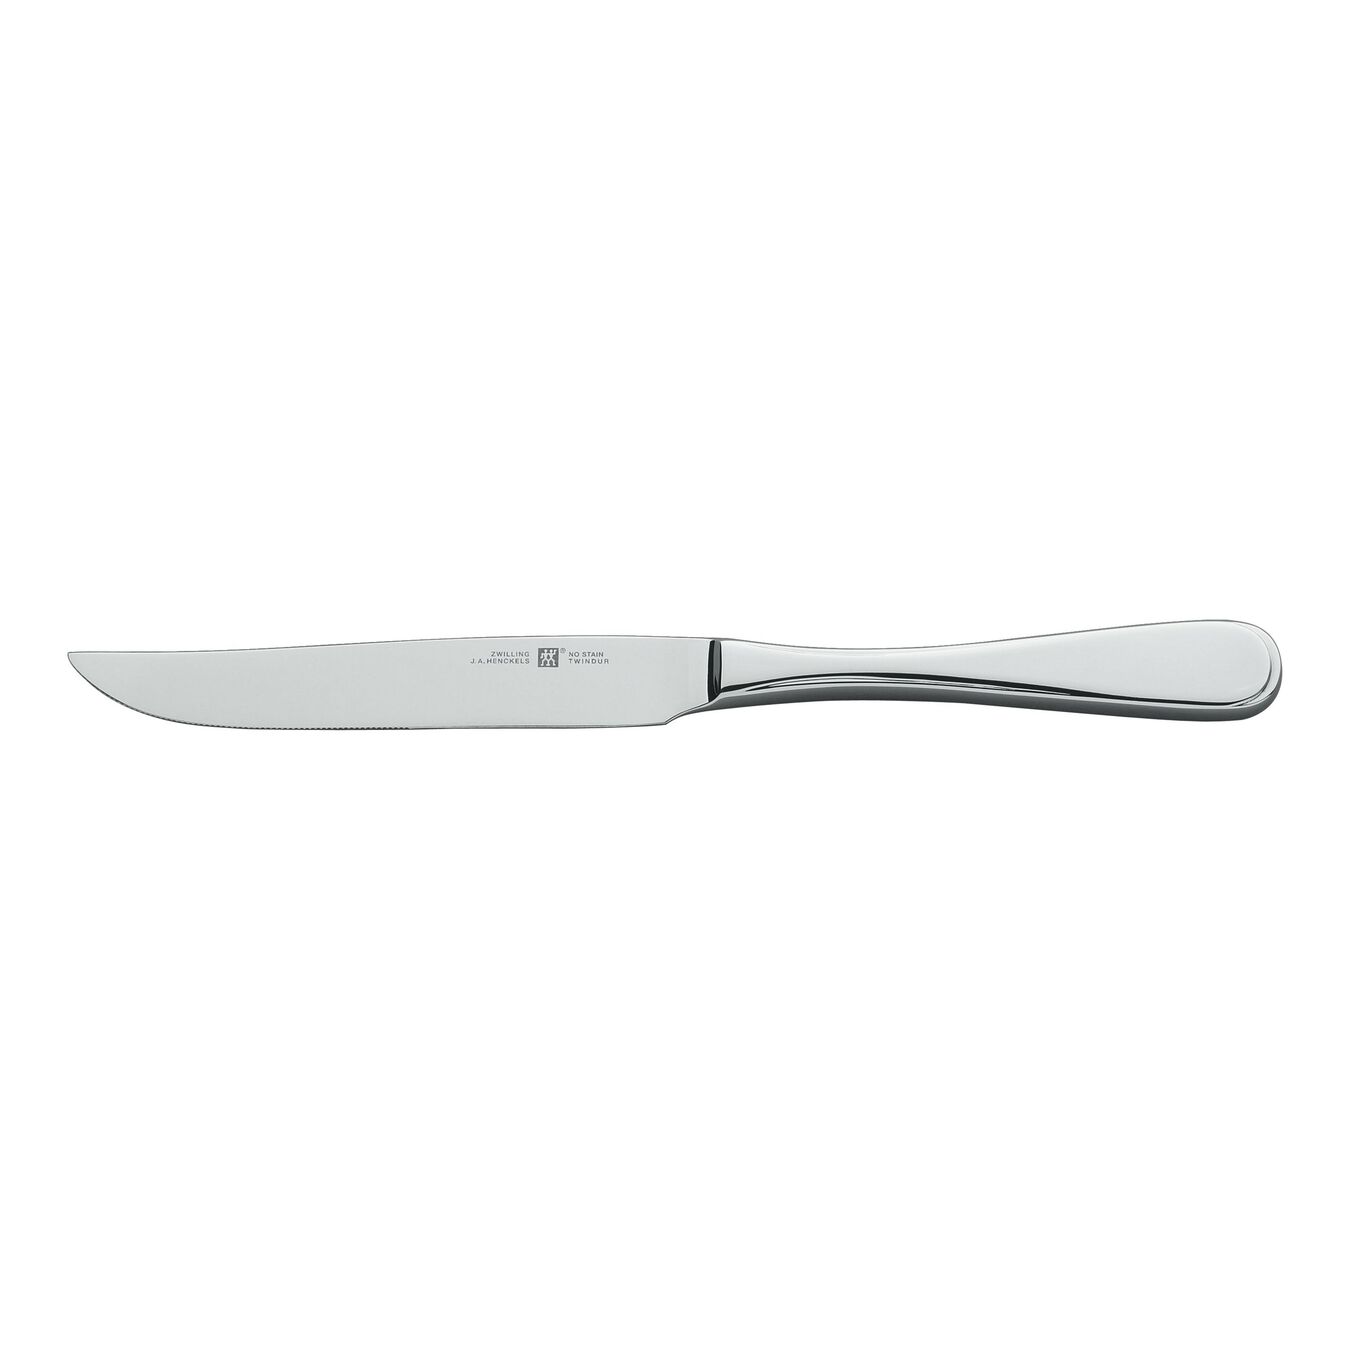 Steakkniv 0,5 cm, Poleret,,large 1